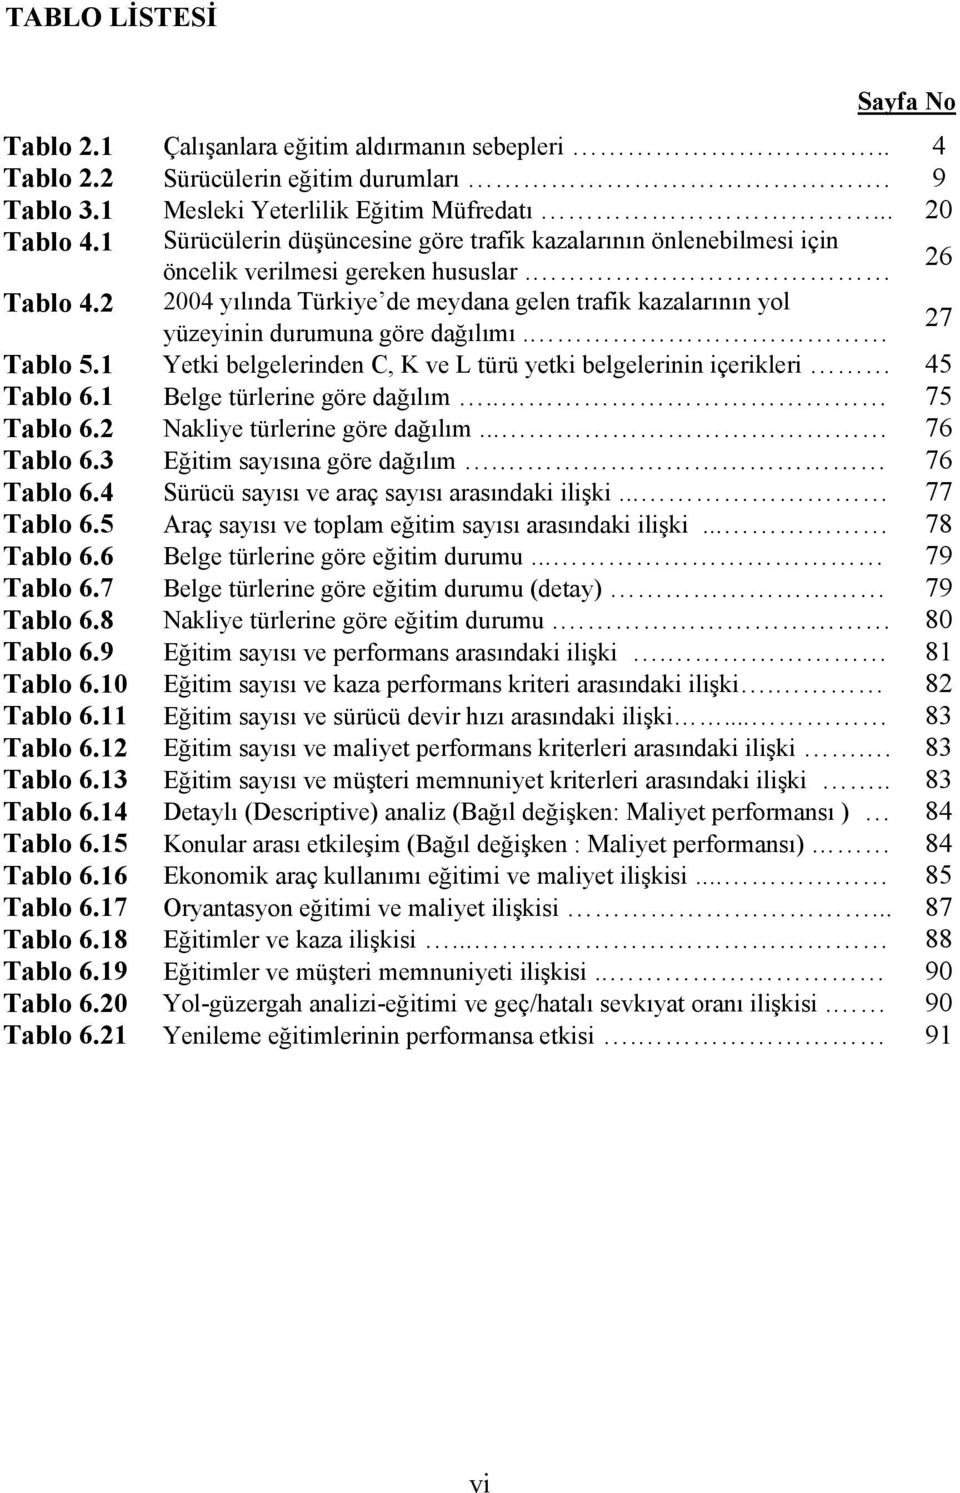 2 2004 yılında Türkiye de meydana gelen trafik kazalarının yol yüzeyinin durumuna göre dağılımı. 27 Tablo 5.1 Yetki belgelerinden C, K ve L türü yetki belgelerinin içerikleri 45 Tablo 6.